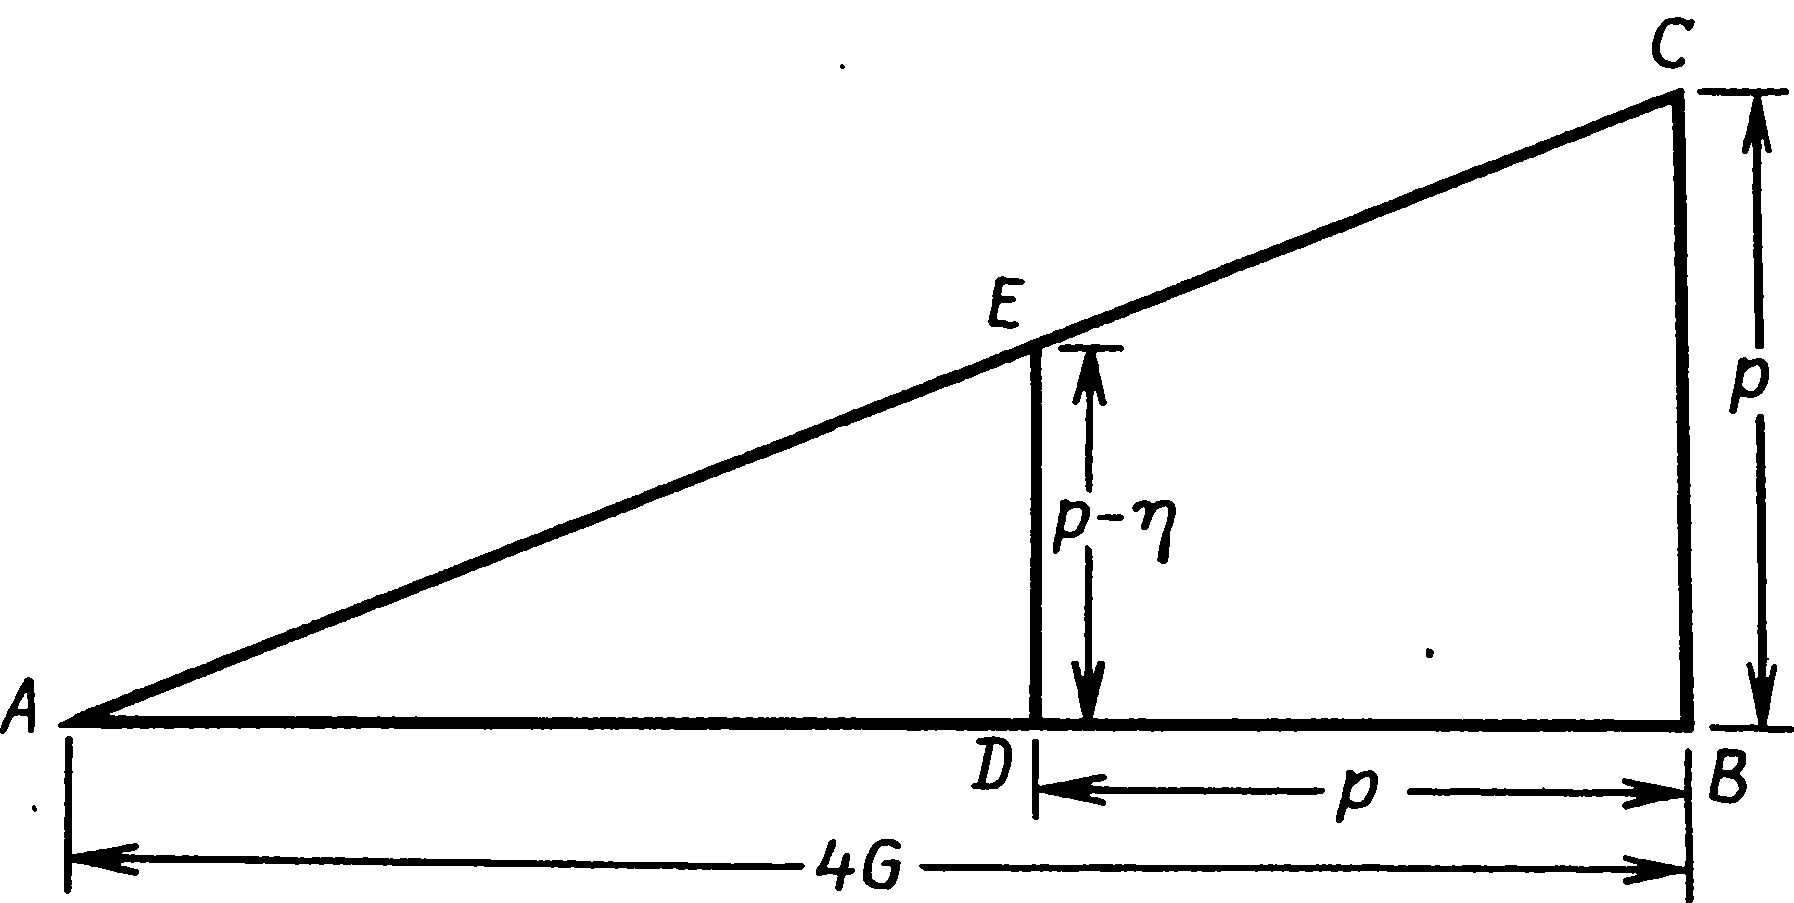 Рис. 7.6. Второй вариант использования треугольника для экстраполяции расстояния. ED/AD = CB/AB, поэтому ED/(4G − p) = p/(4G) и ED = (4G − p)p/(4G) = p − η